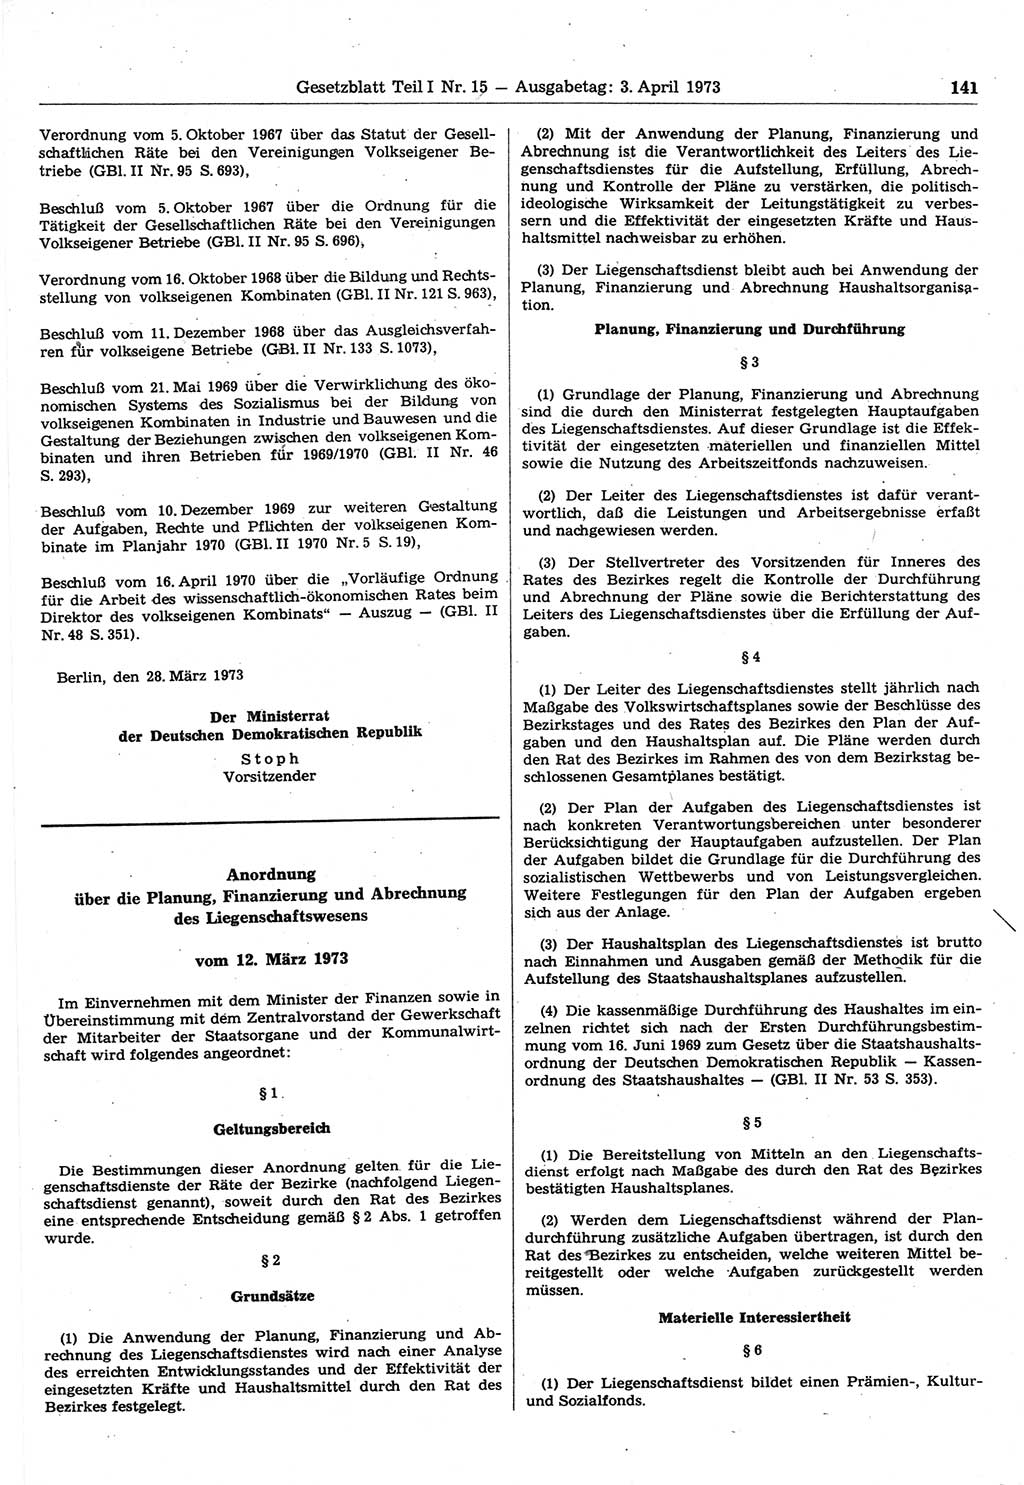 Gesetzblatt (GBl.) der Deutschen Demokratischen Republik (DDR) Teil Ⅰ 1973, Seite 141 (GBl. DDR Ⅰ 1973, S. 141)